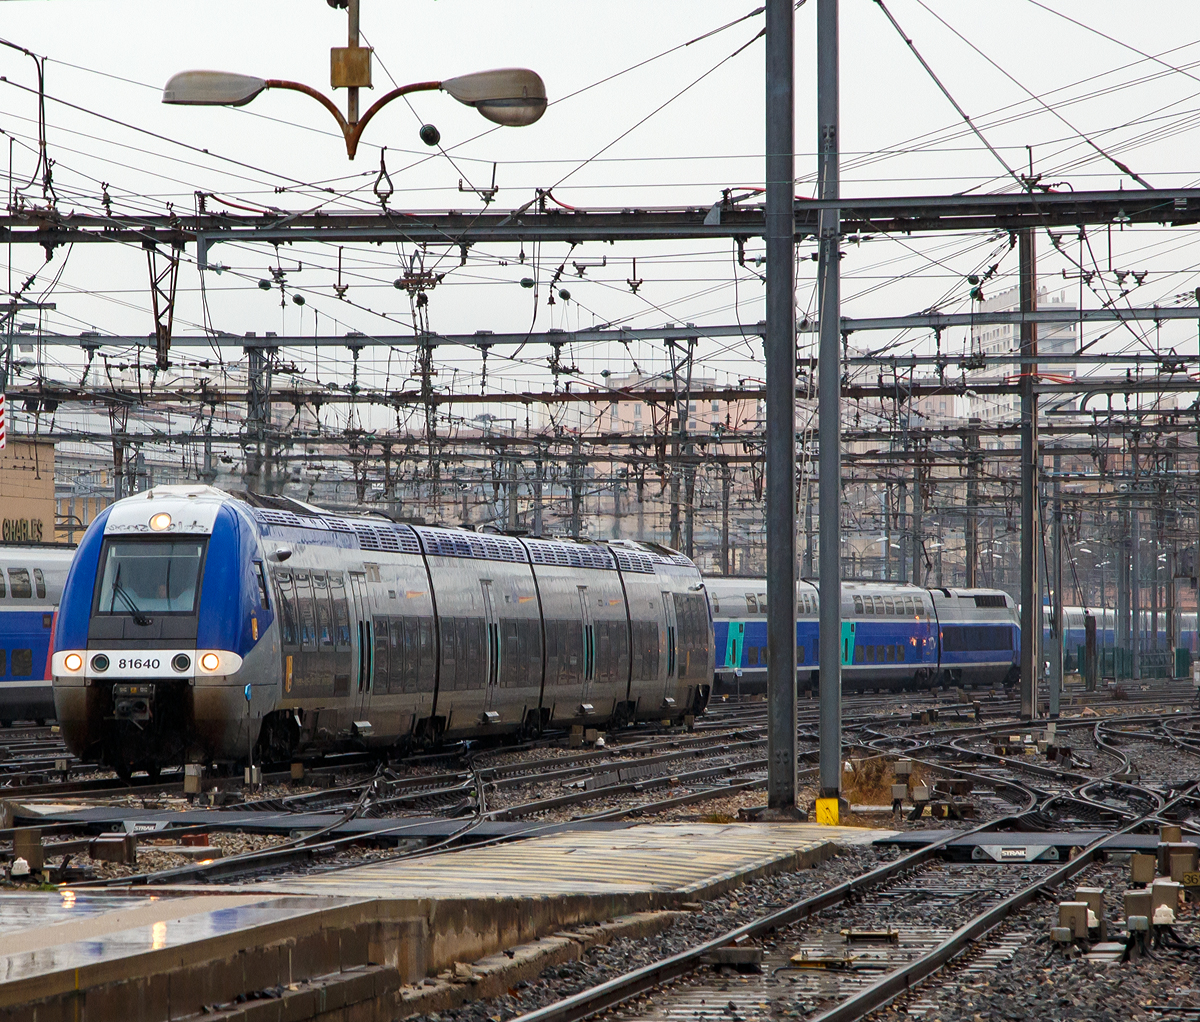 
Der  B 81640 / B 81639 ein vierteiliger Hybrid BGC-AGC-Triebzug (bimode) der SNCF TER Provence-Alpes-Côte d'Azur fährt am 25.03.2015 in den Bahnhof Marseille Saint-Charles ein. 

Die SNCF-Baureihe B 81500 Zweikraftversion (BGC / bimode) des autorail à grande capacité (AGC) des Herstellers Bombardier, sie können sowohl mit Dieselantrieb als auch elektrisch unter 1,5 kV Gleichspannung fahren. Den B 81500 gibt es als dreiteiligen und vierteiligen Zug. Ein Triebzug jeweils zwei angetriebene Enddrehgestelle, die dazwischen liegenden Drehgestelle sind Jakobs-Drehgestelle. Der Autorail Grande Capacité kurz AGC (deutsch: „Triebwagen mit großer Kapazität“) ist ein Triebzug der von Bombardier in Crespin für die SNCF gebaut wurde. 